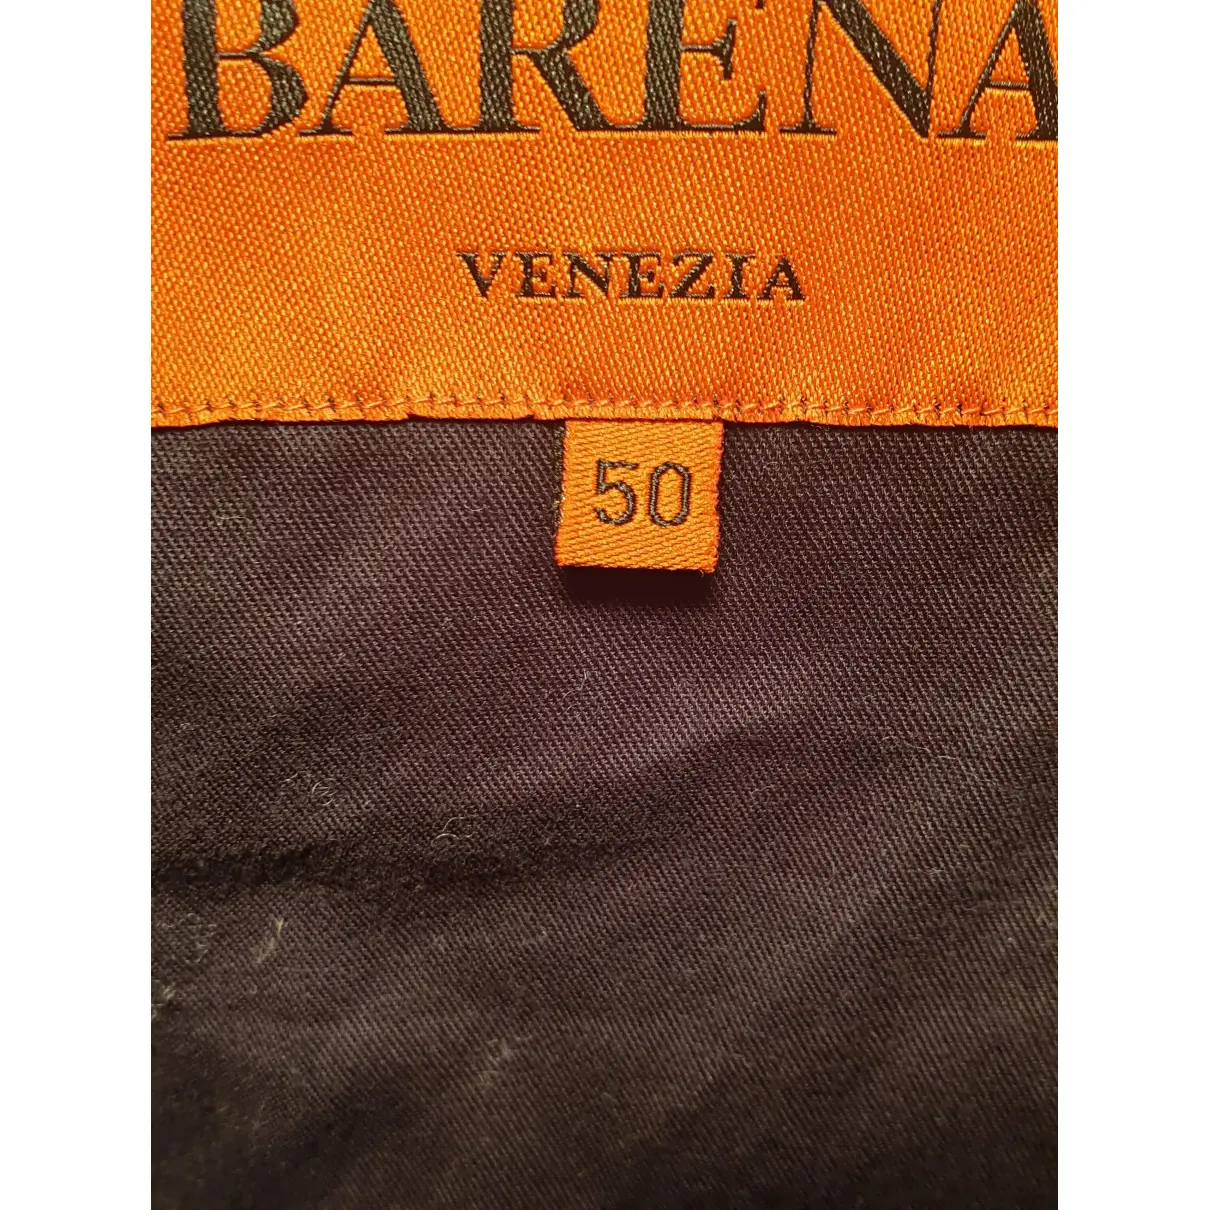 Wool coat Barena Venezia